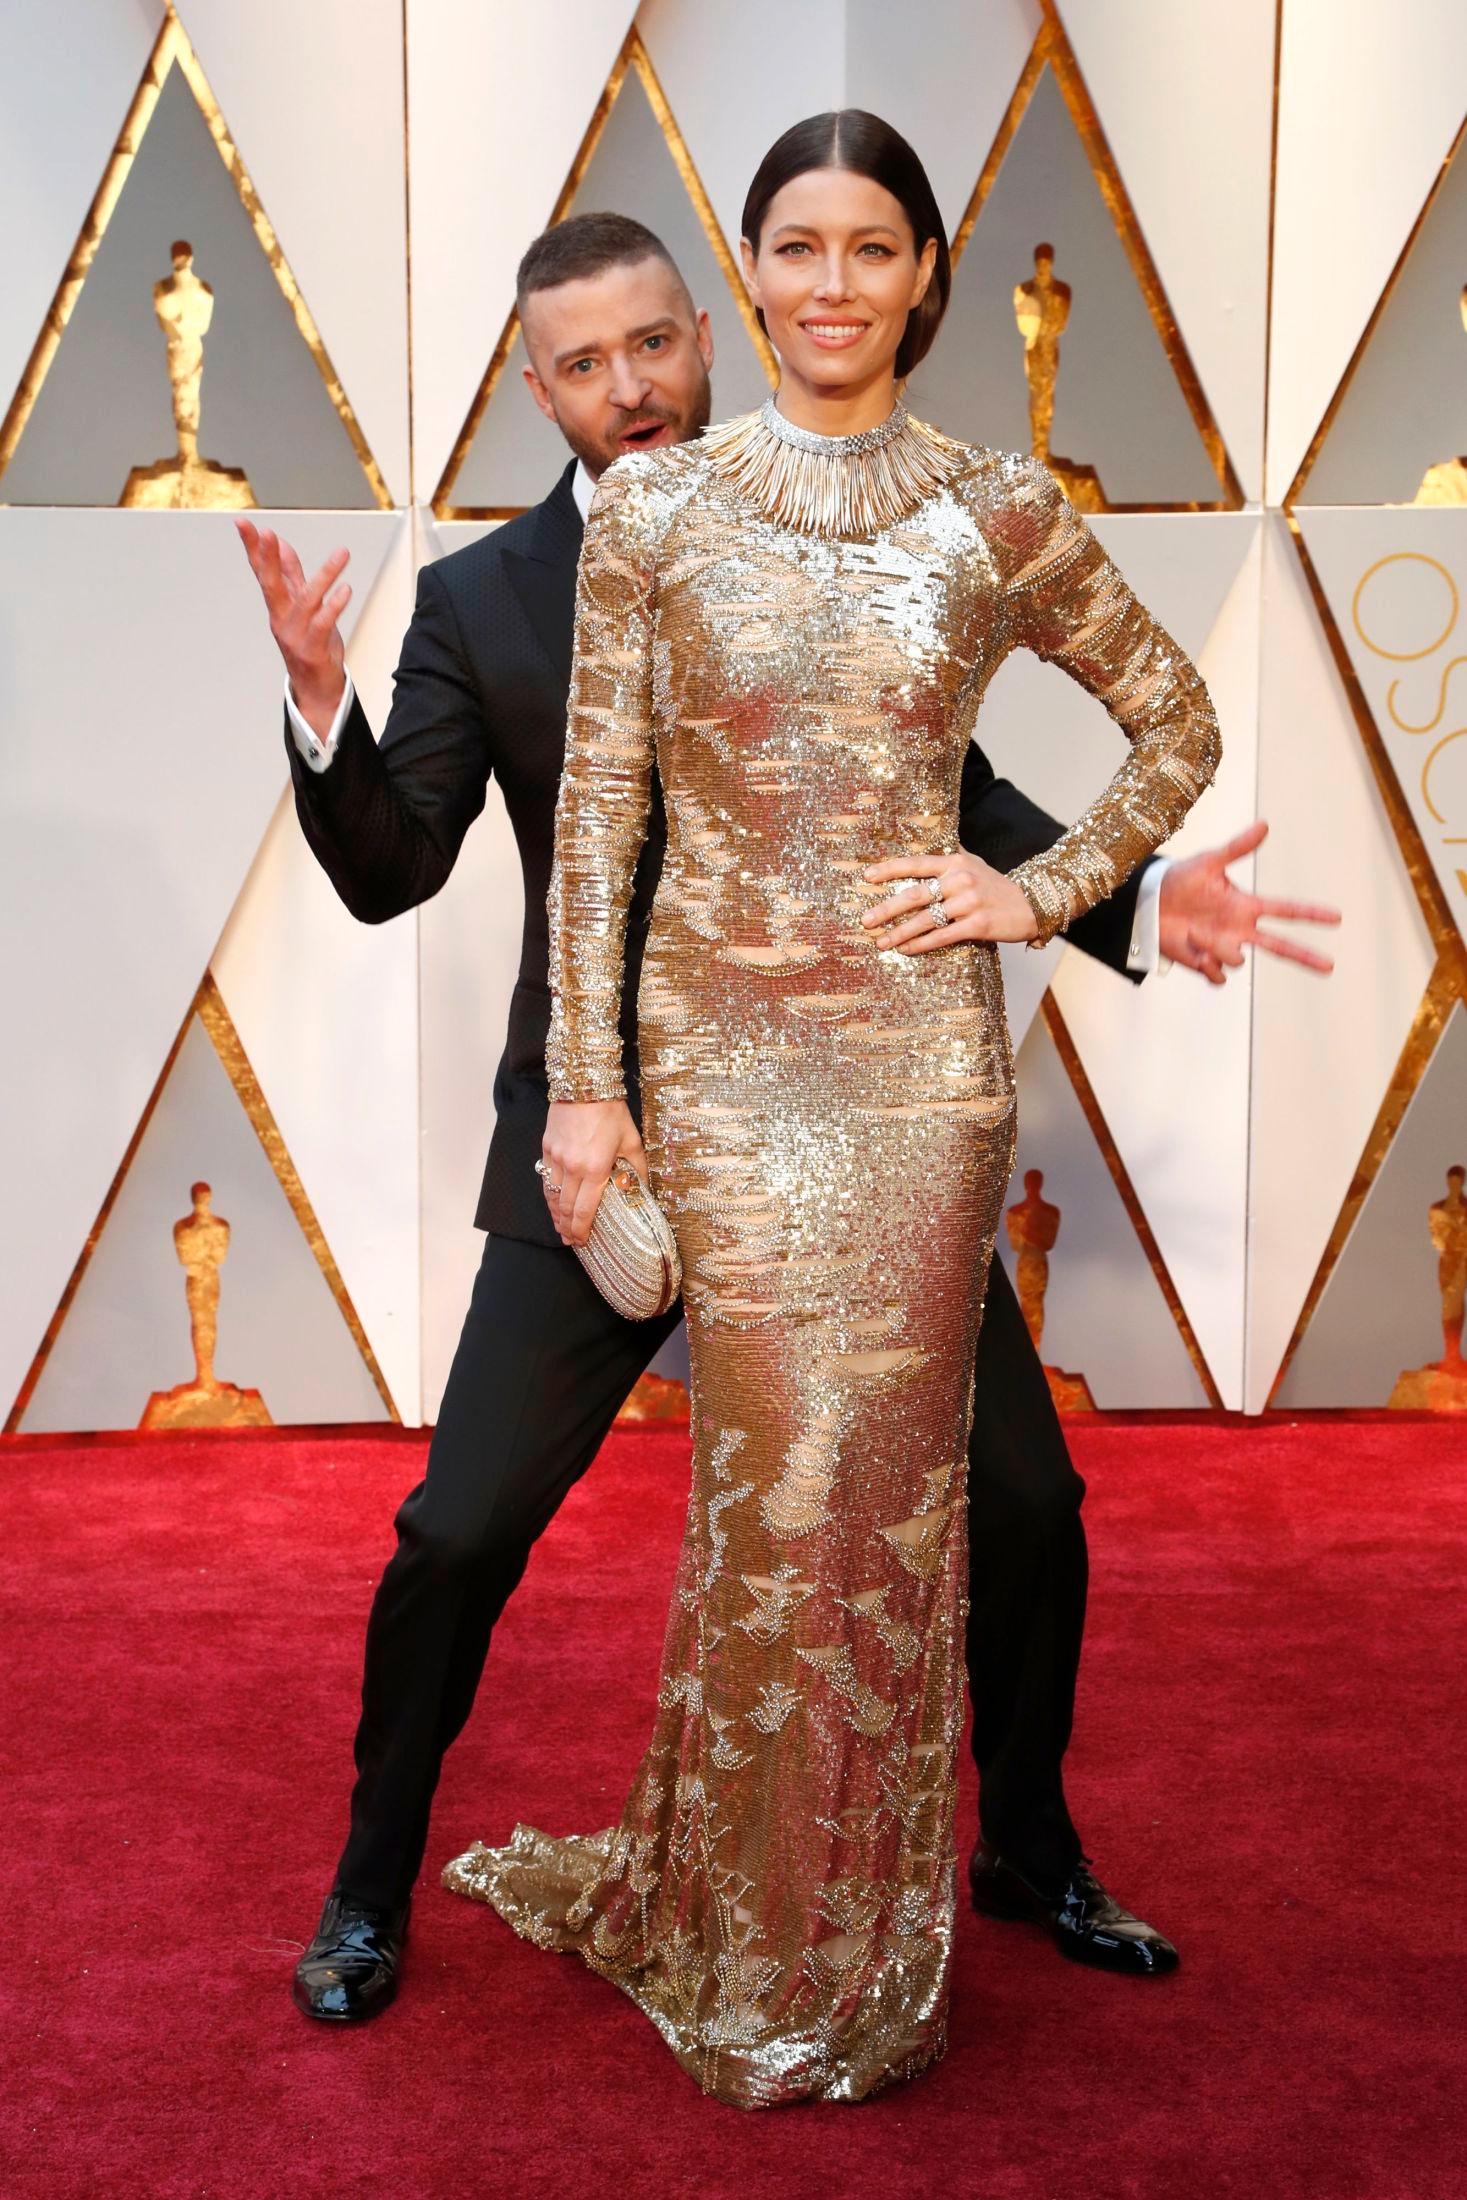 GYLLENT ØYEBLIKK: Justin Timberlake og Jessica Biel har sammen hatt flere stilige øyeblikk på den røde løperen. Dette under Oscar-utdelingen i 2017 er kanskje det beste. Foto: MIKE NELSO/EPA.